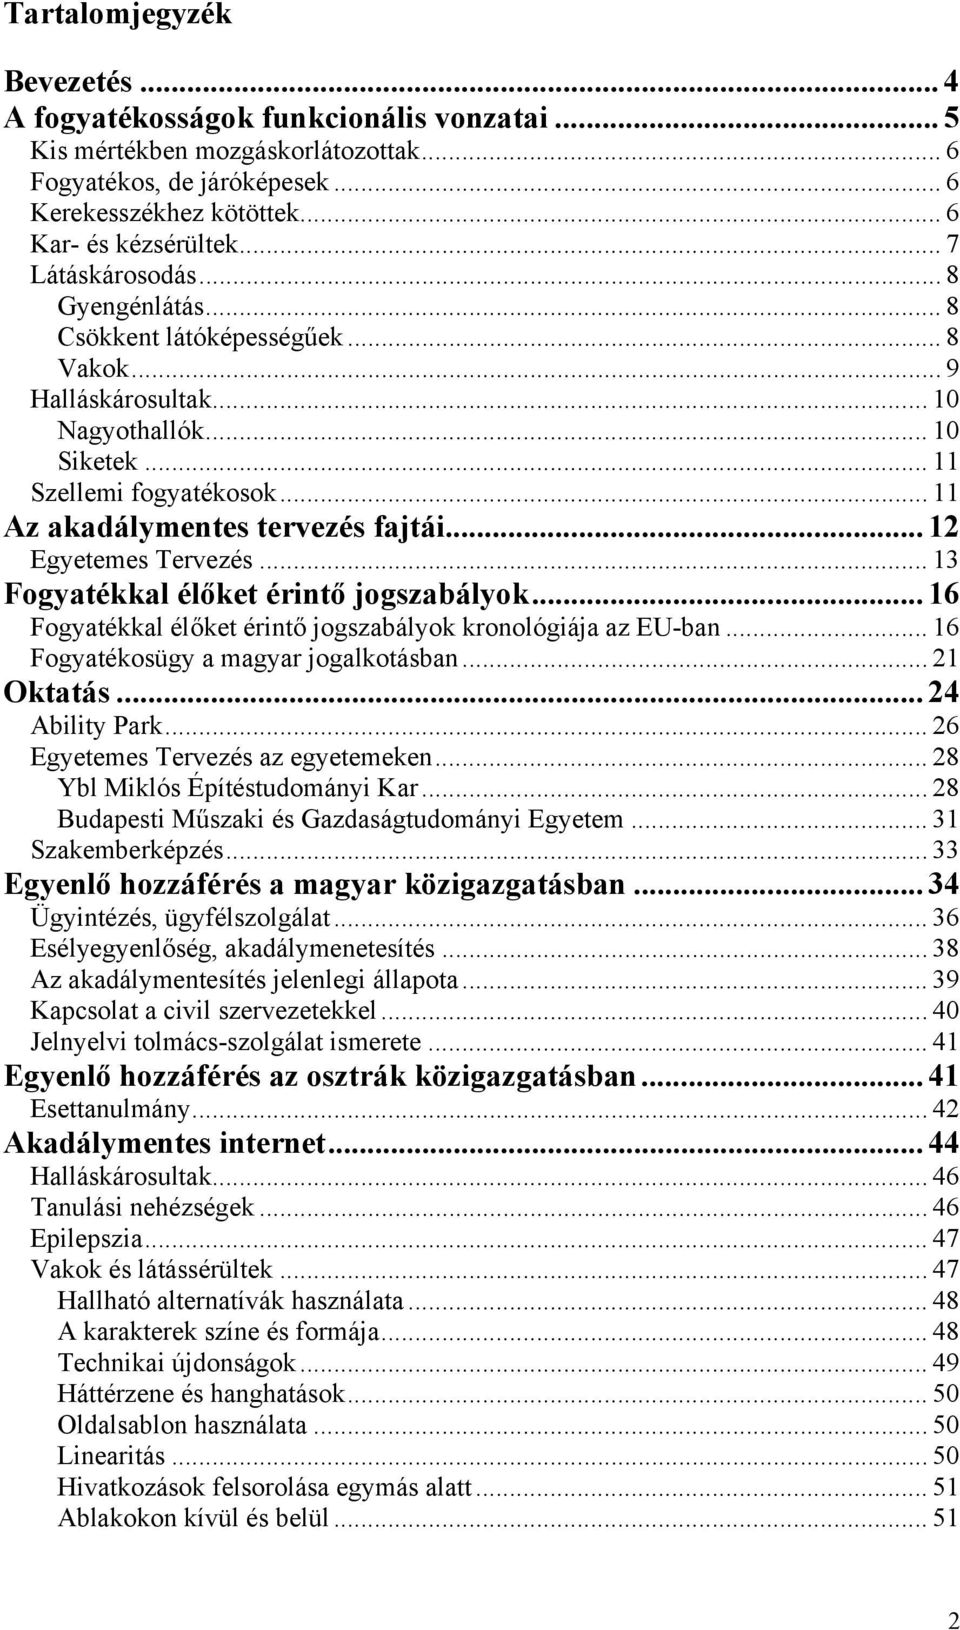 .. 12 Egyetemes Tervezés... 13 Fogyatékkal élőket érintő jogszabályok... 16 Fogyatékkal élőket érintő jogszabályok kronológiája az EU-ban... 16 Fogyatékosügy a magyar jogalkotásban... 21 Oktatás.